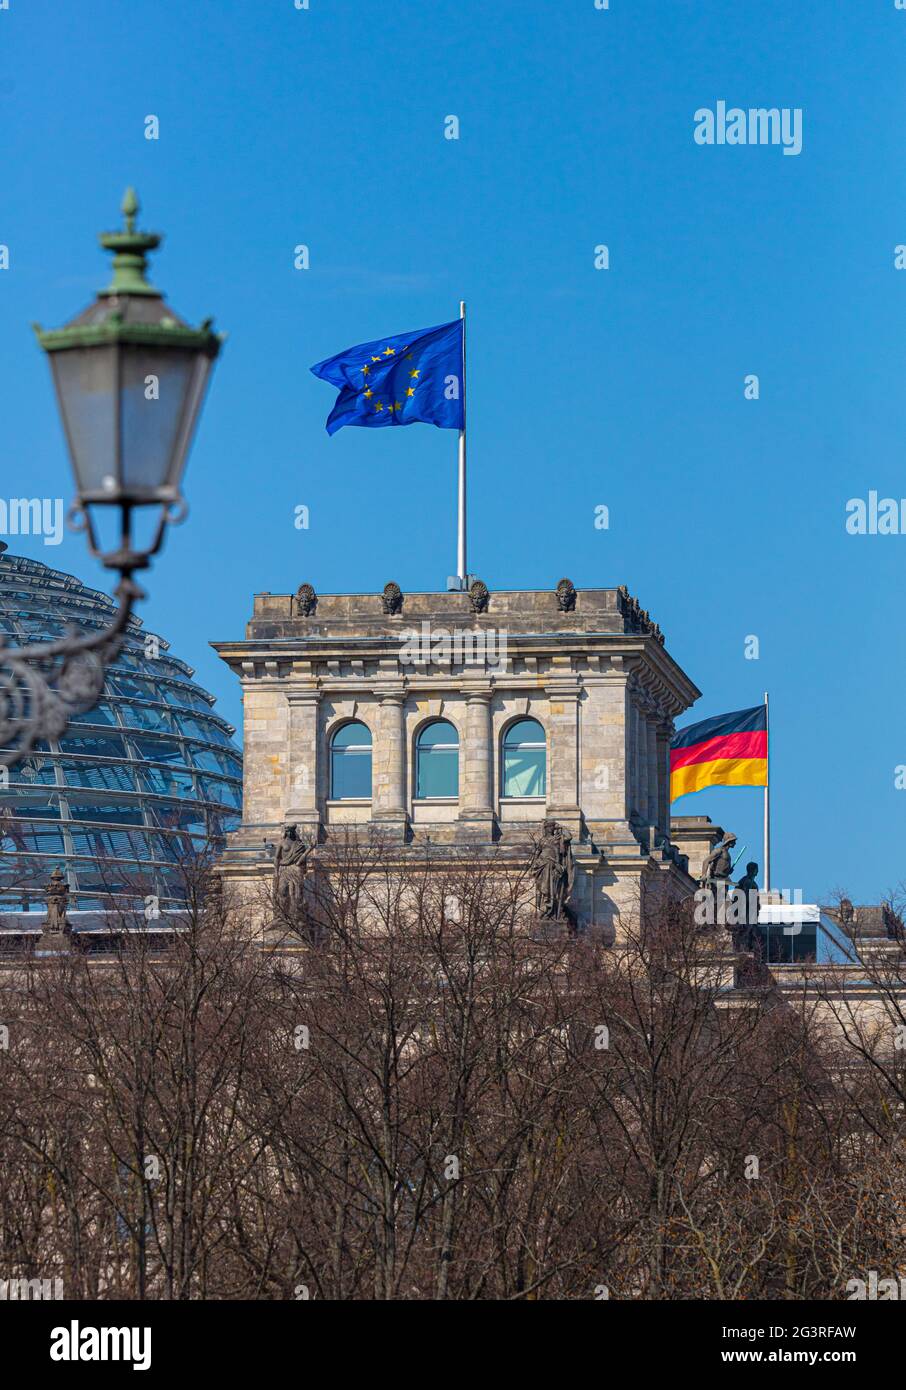 Berlino Reichstag con sventolare la bandiera tedesca dell'ue, la politica tedesca, la democrazia, la costruzione del governo, la germania Foto Stock